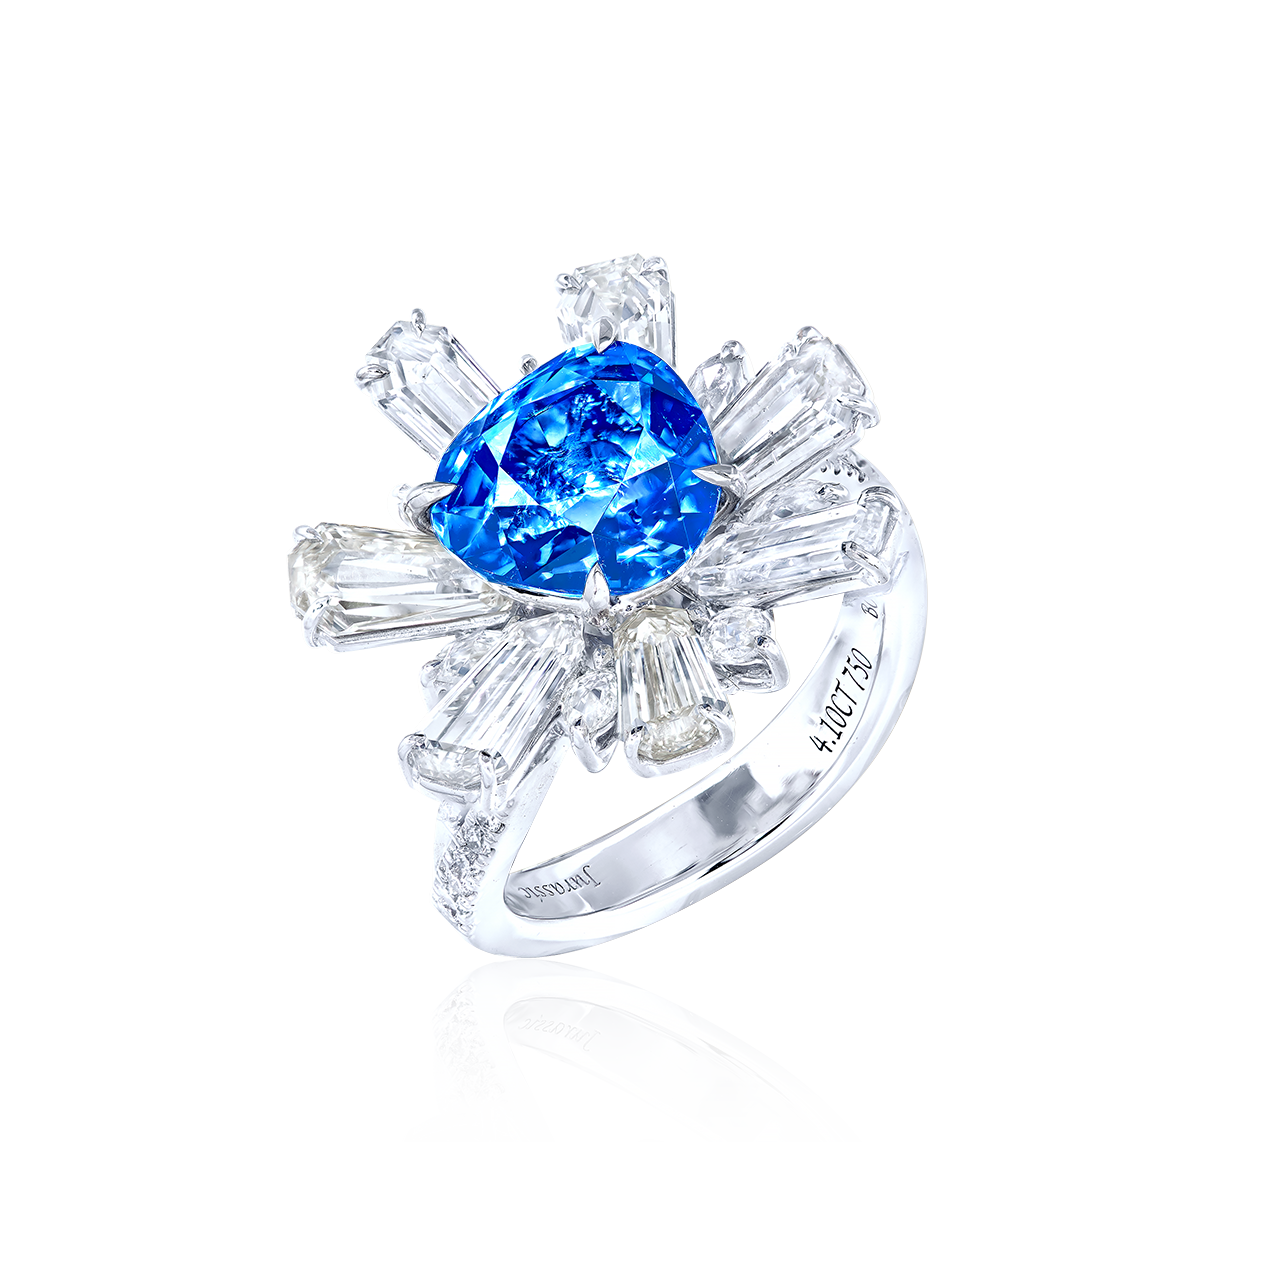 4.10 克拉 越南天然無燒鈷藍尖晶鑽戒
VIETNAM COBALT BLUE SPINEL 
AND DIAMOND RING